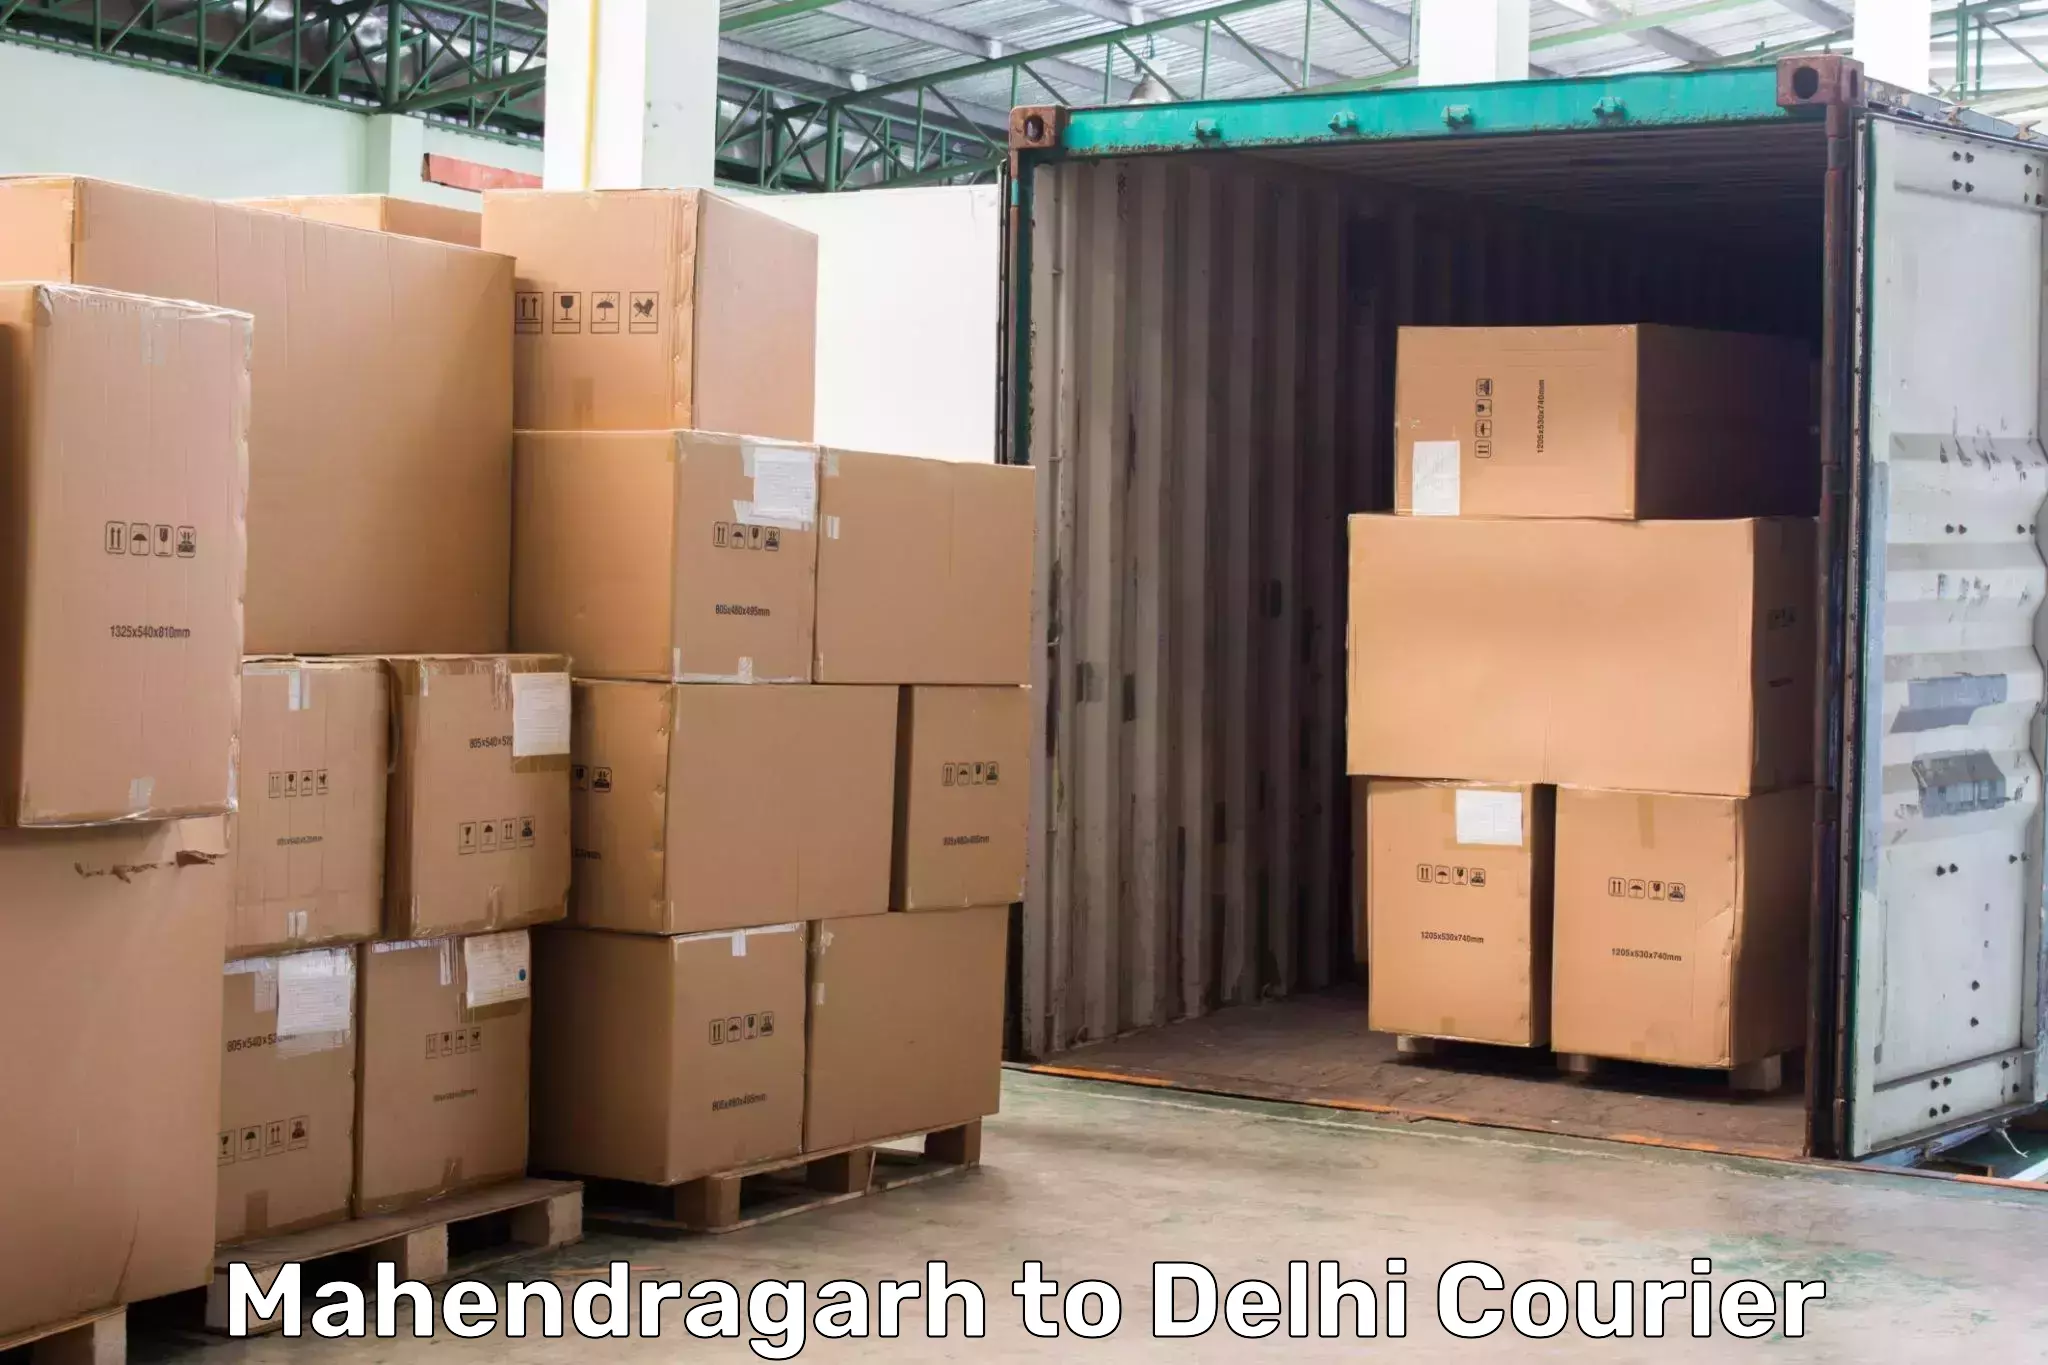 High-capacity parcel service Mahendragarh to Jamia Hamdard New Delhi